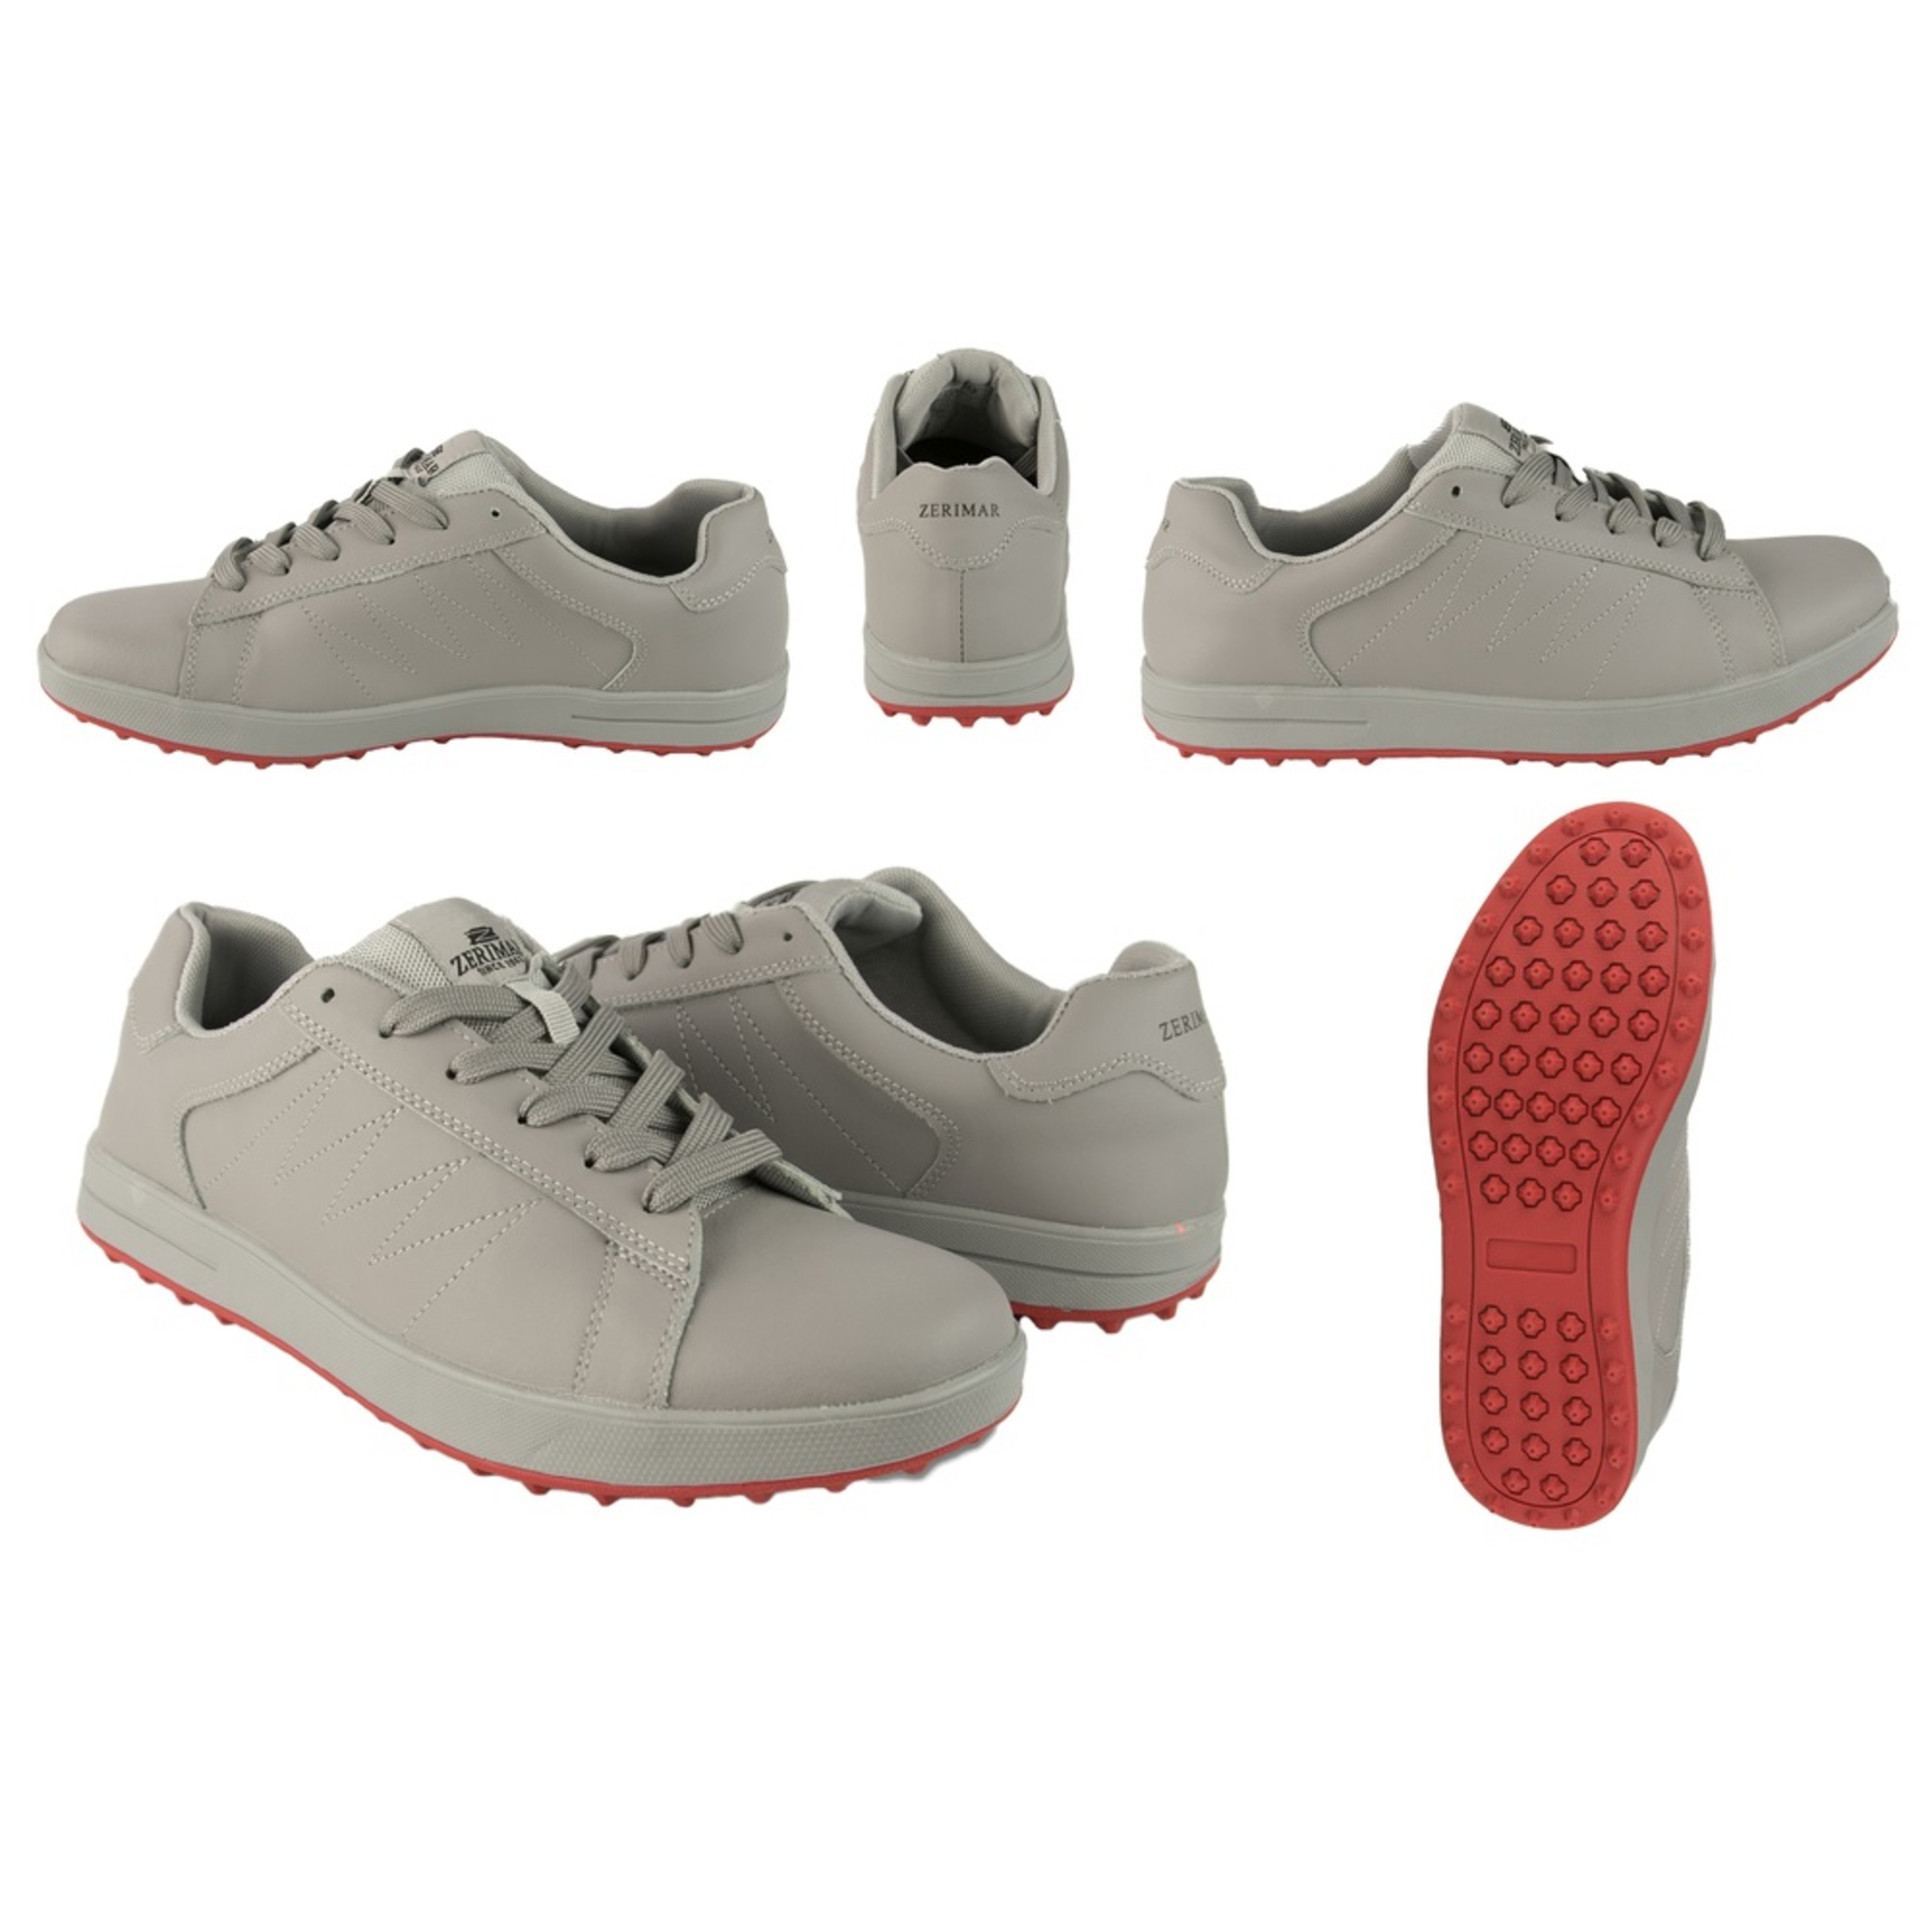 Zapatos De Golf Zerimar Gris Con Bordados - Gris - Zapatos Golf Hombre Zapatillas Piel  MKP